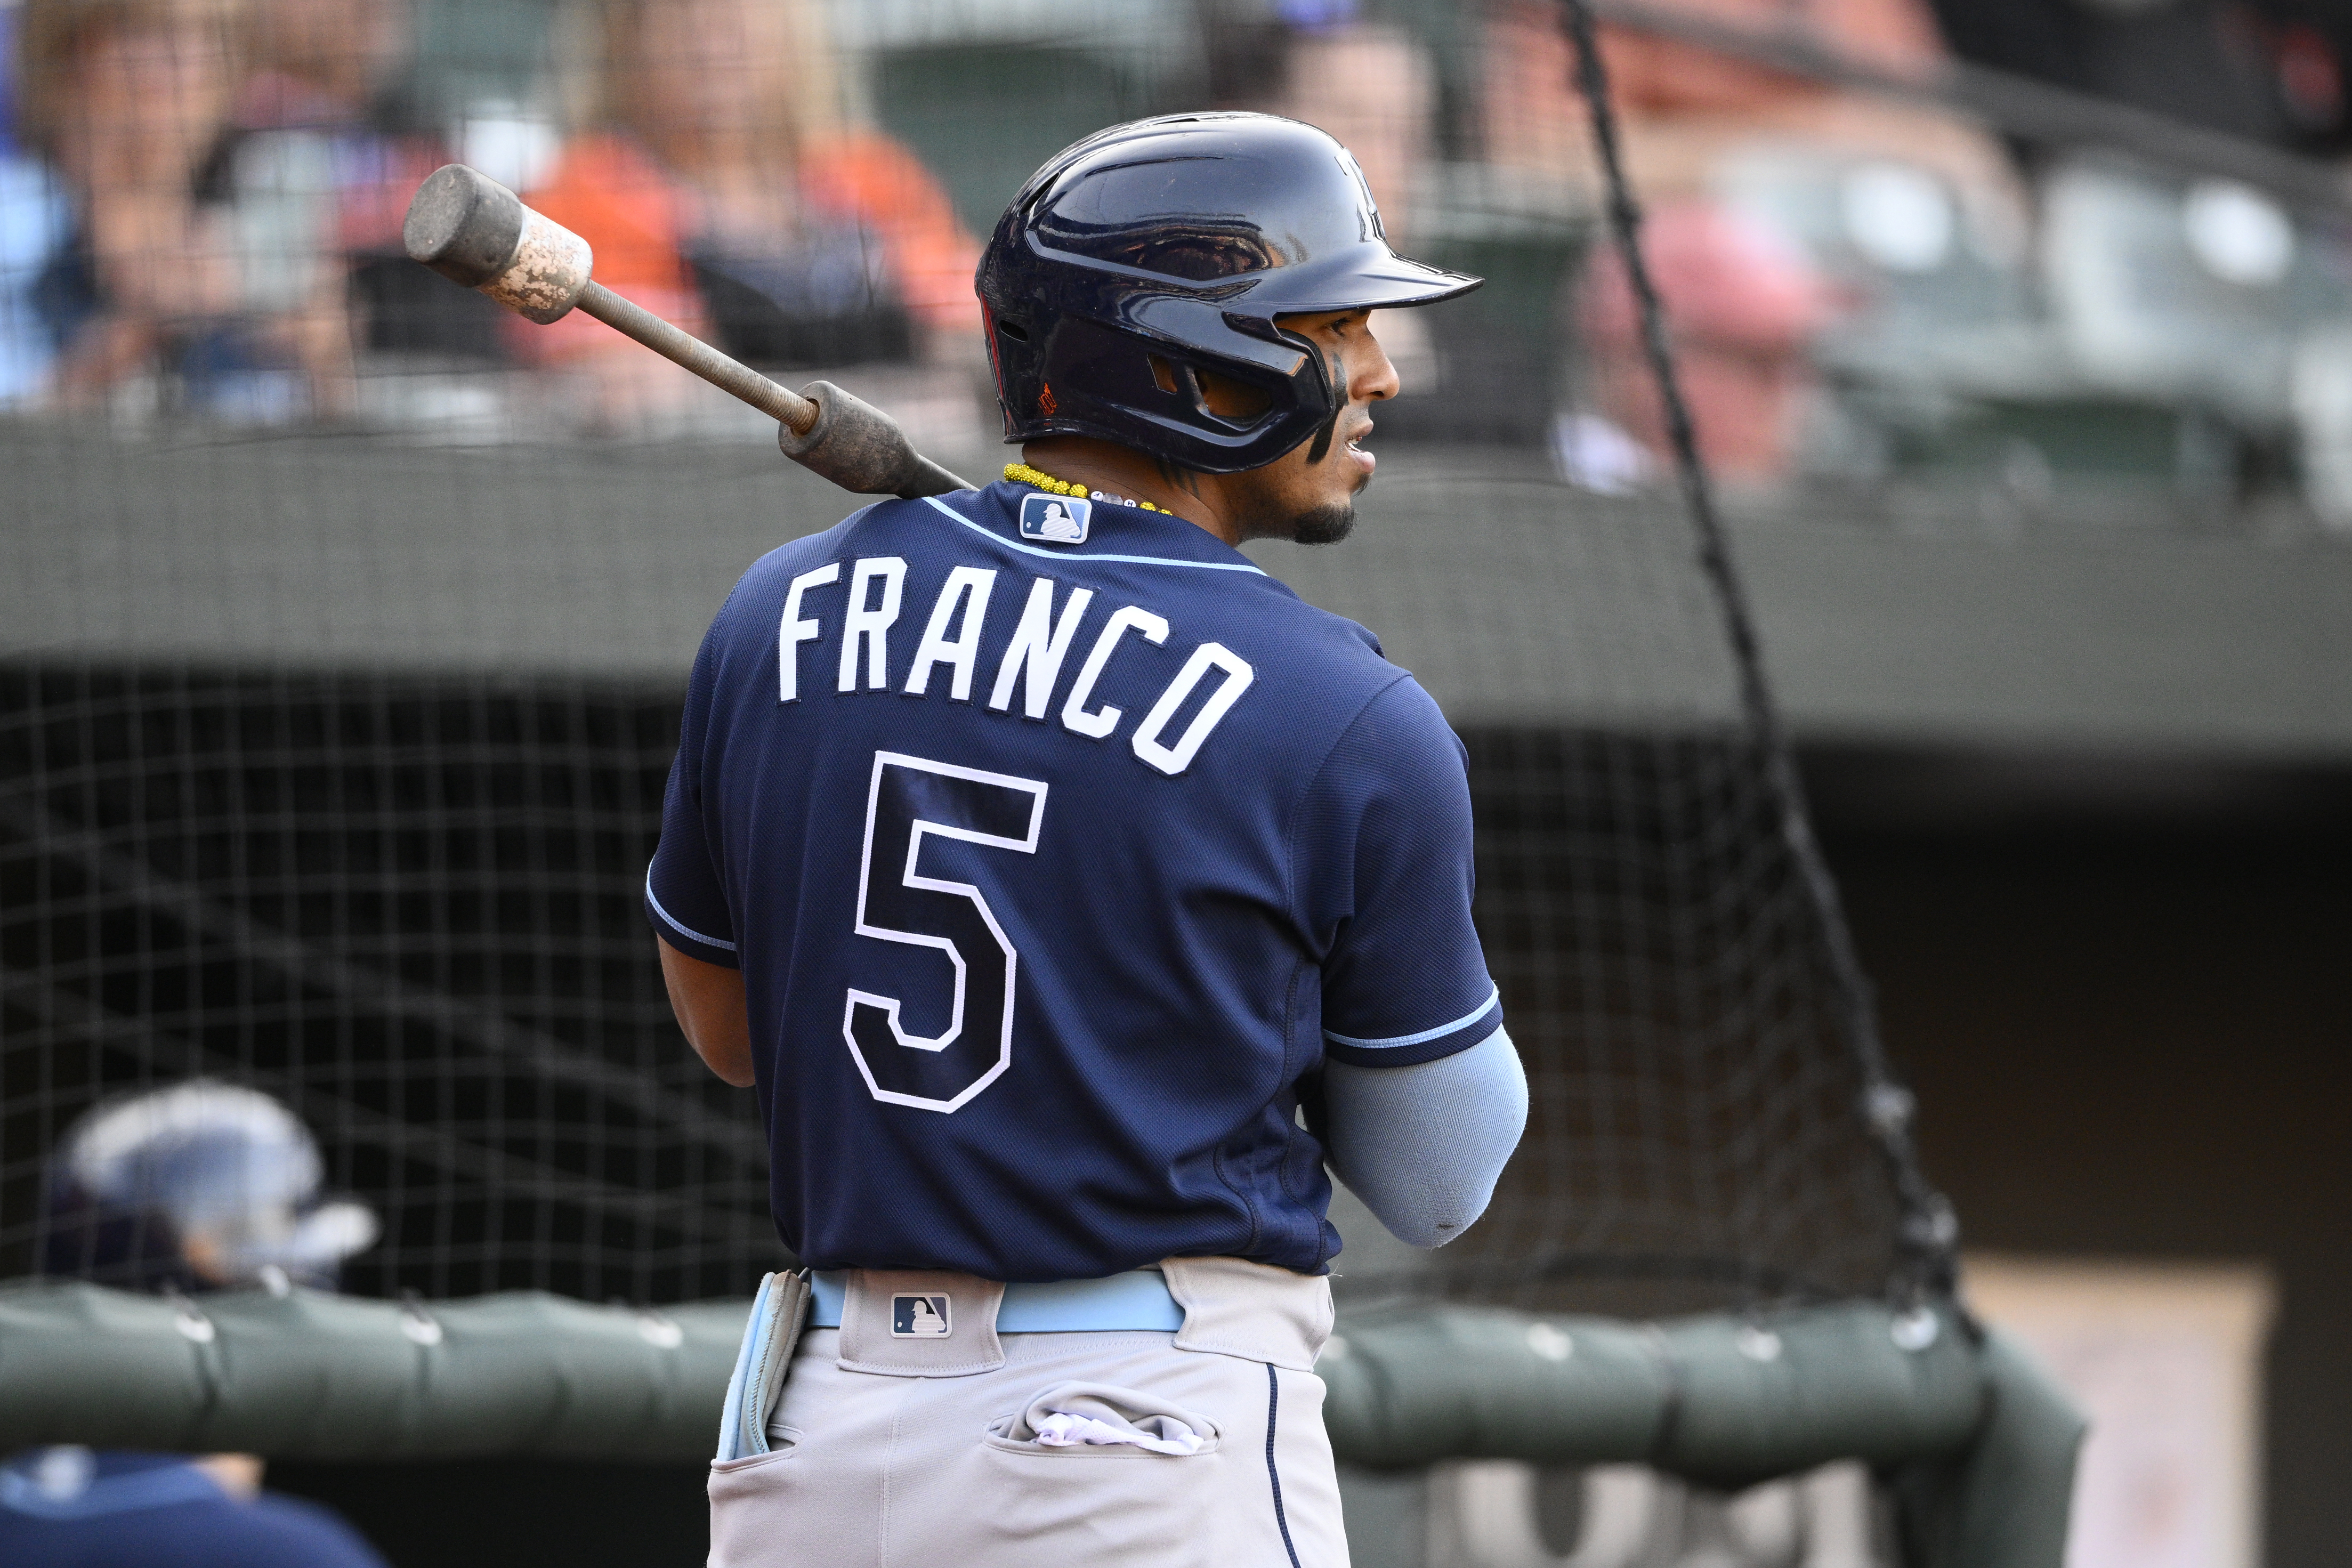 Social Media Posts Surrounding Wander Franco Under MLB Investigation